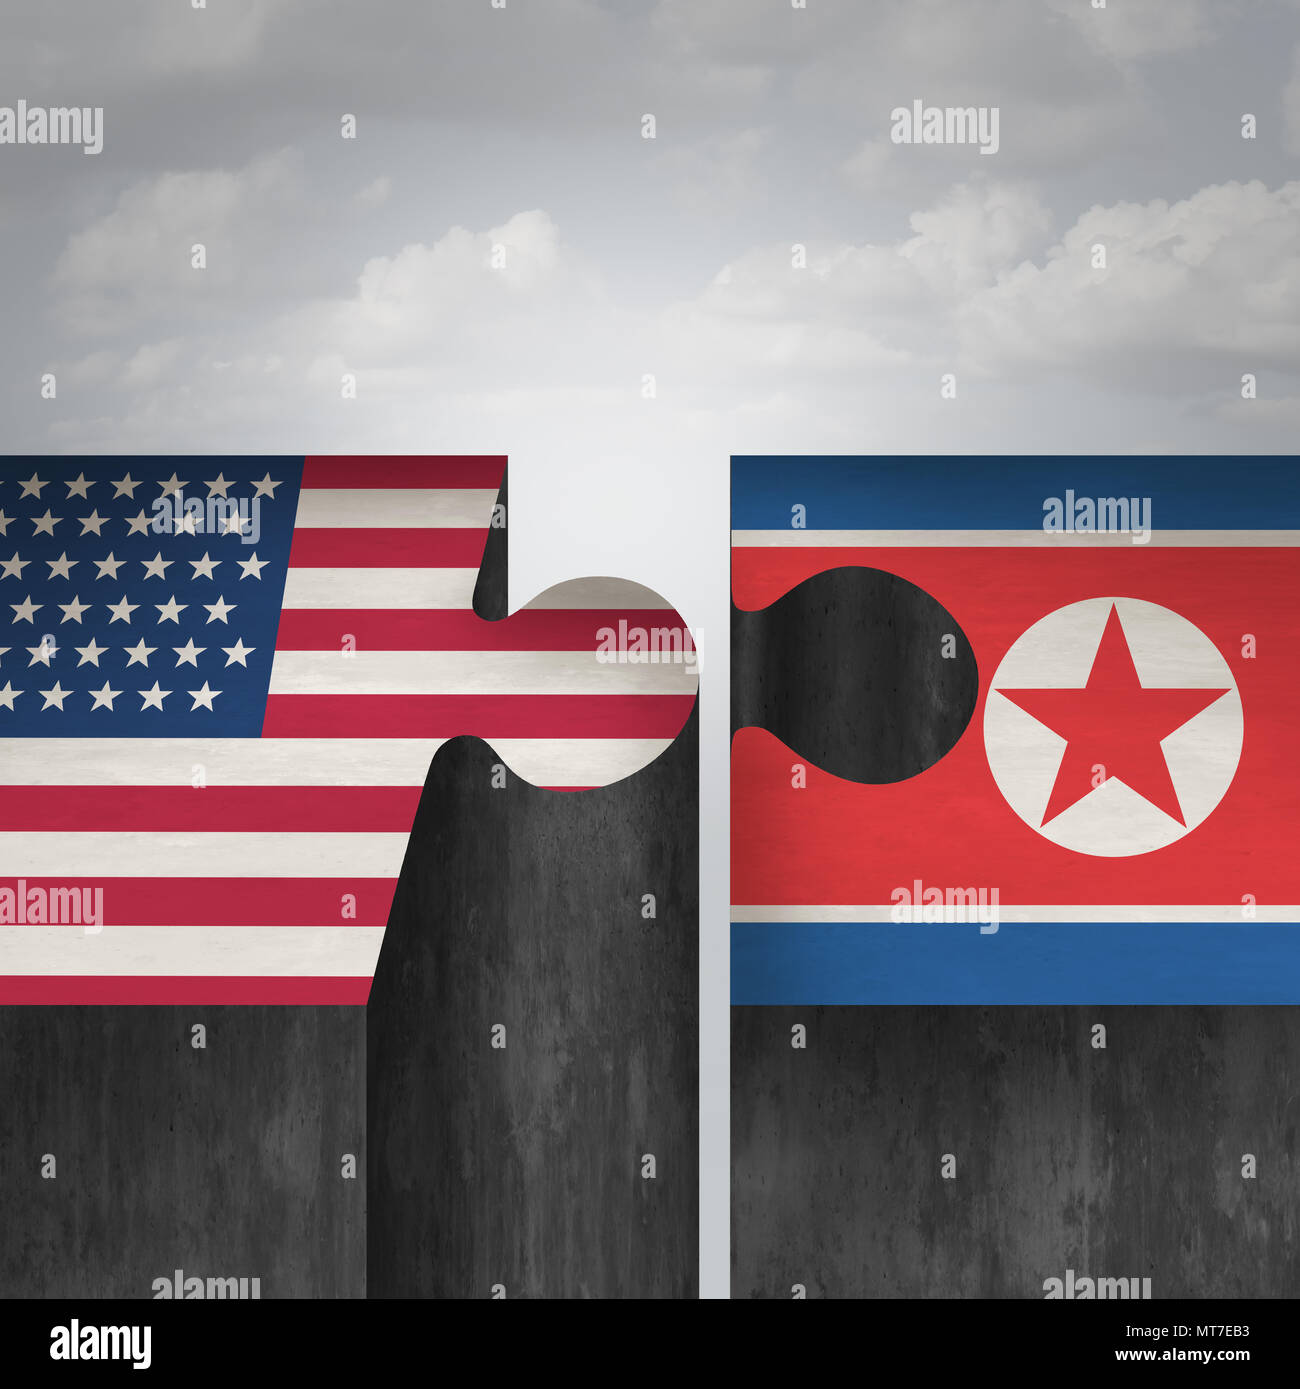 La Corée du Nord, États-Unis d'Amérique et concept du sommet et de la Corée du Nord et de l'accord comme un succès de la diplomatie réunion diplomatique avec Pyongyang et laver Banque D'Images